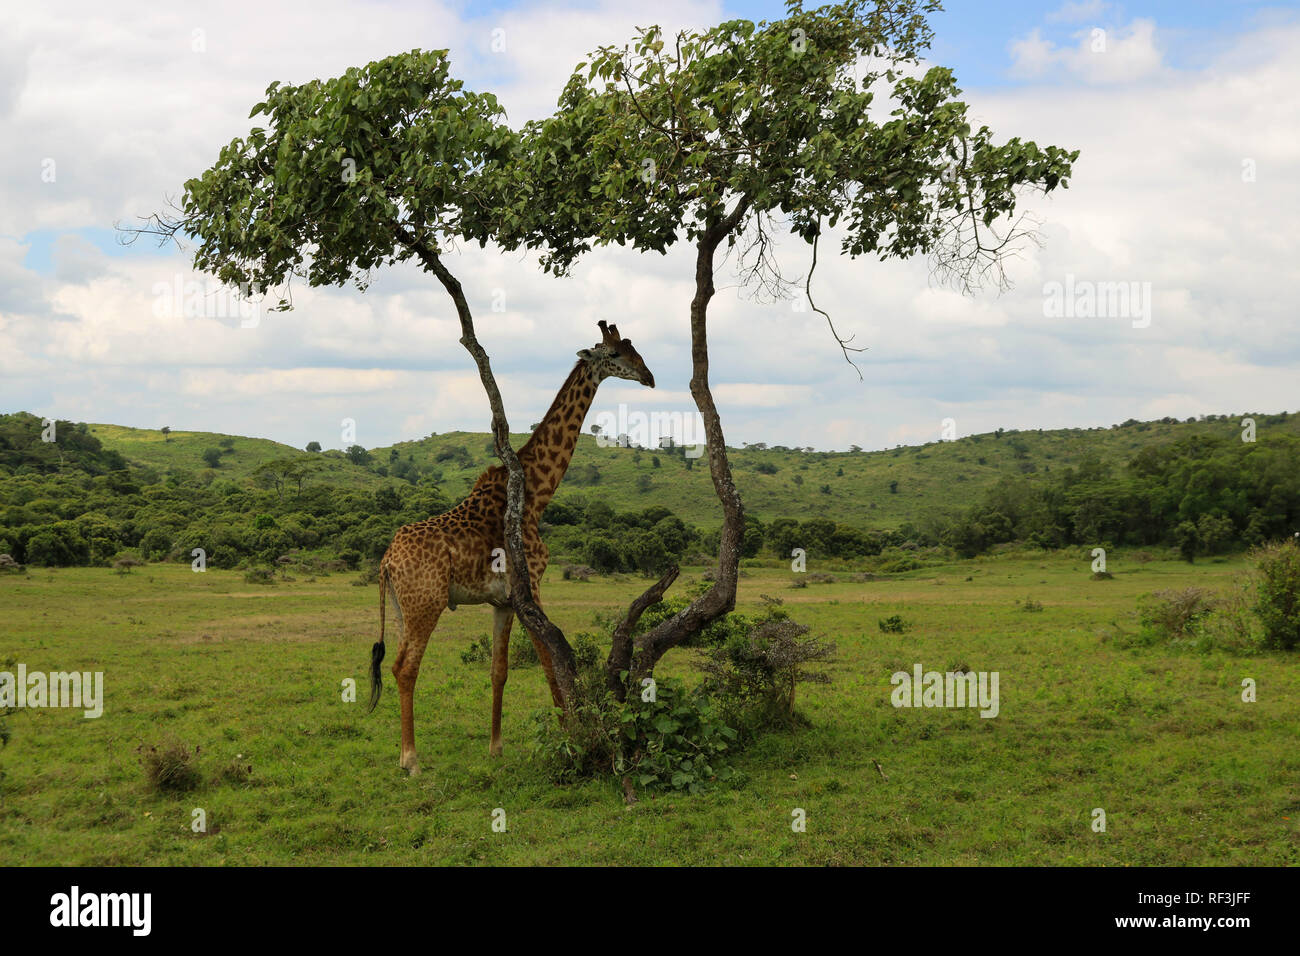 Tanzania Safari Stock Photo